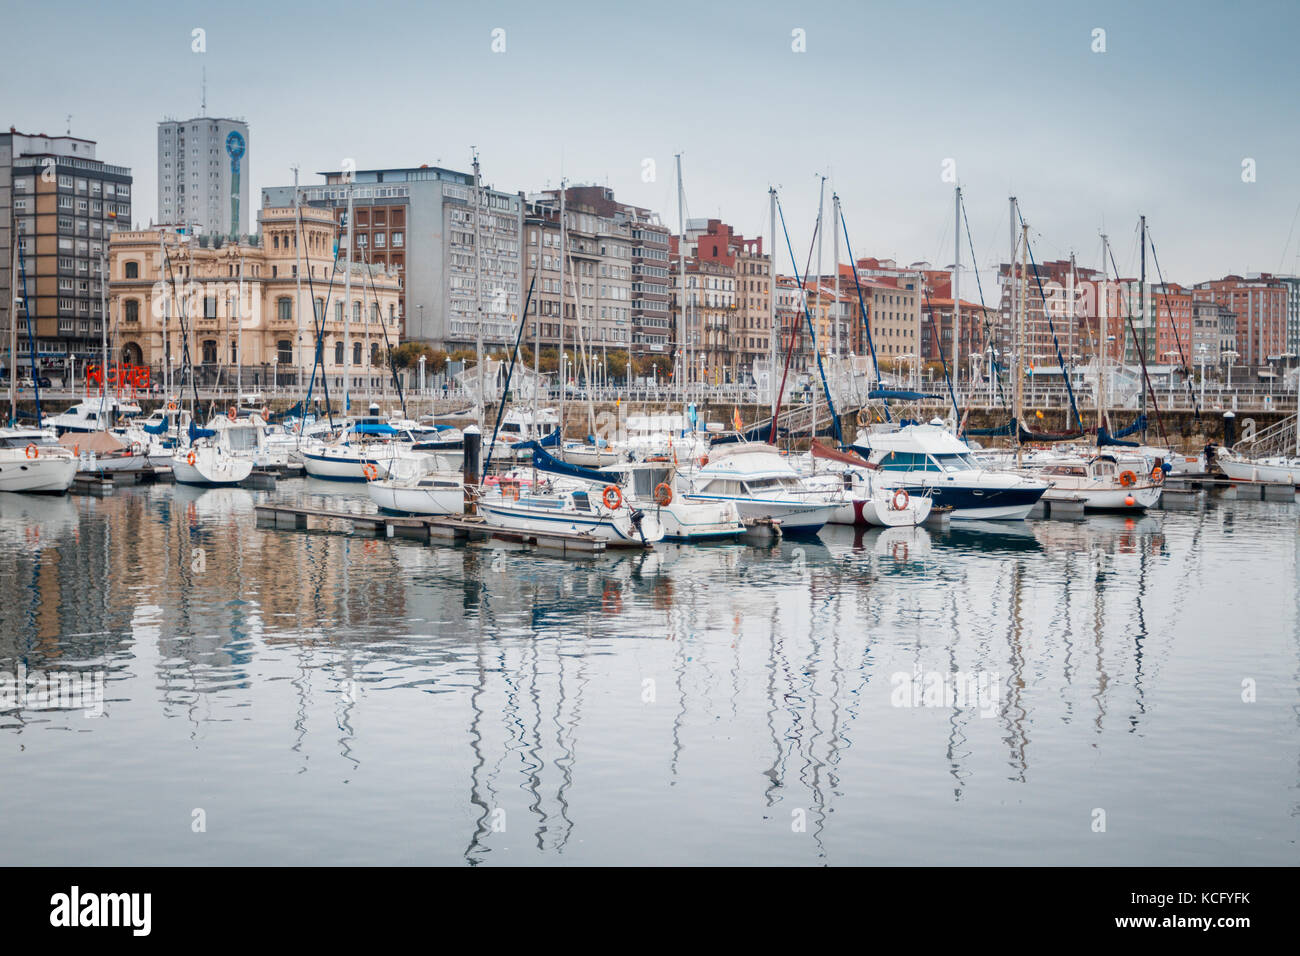 Port of Gijon, Asturias, Spain Stock Photo